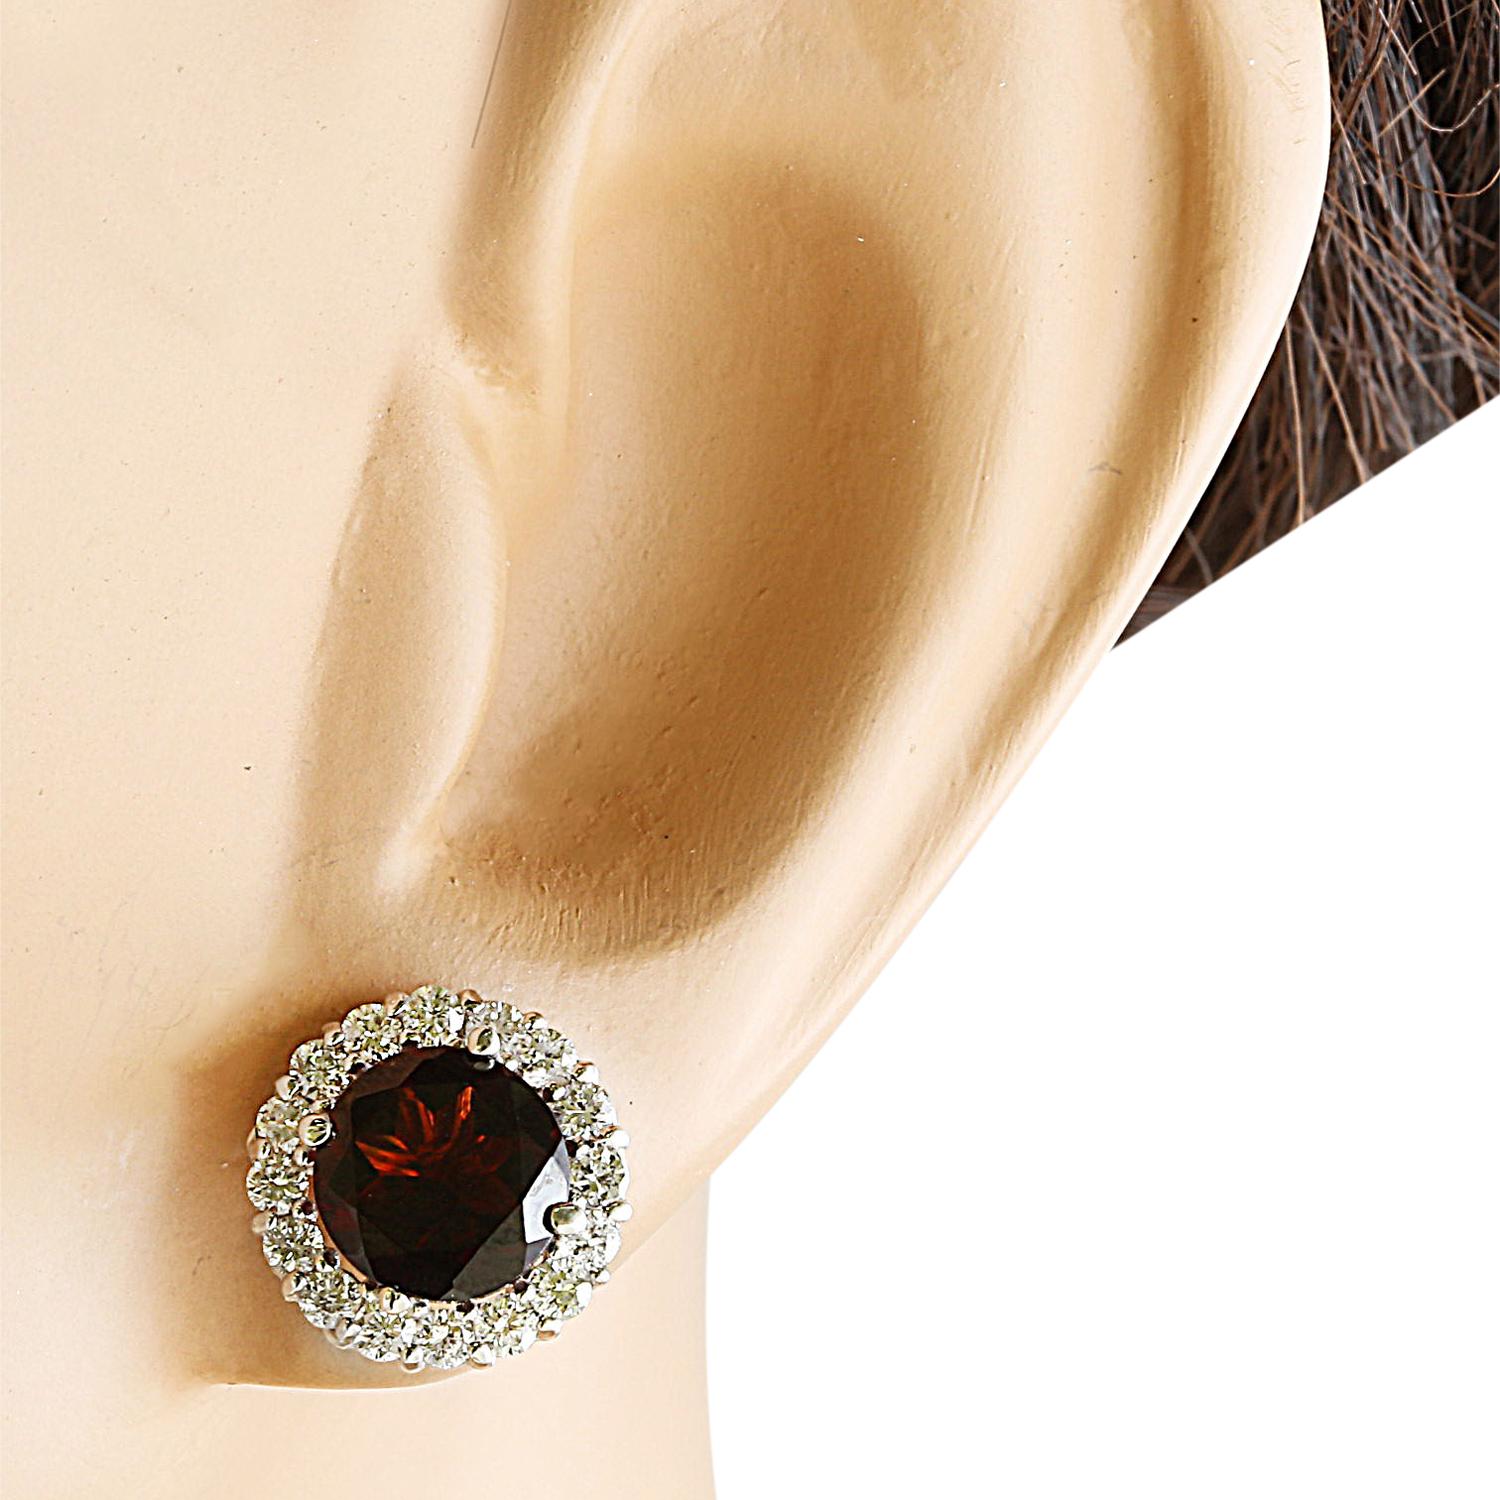 3.65 Carat Natural Garnet 14 Karat Solid White Gold Diamond Earrings (Boucles d'oreilles en or blanc massif avec diamants)
Estampillé : 14K 
Poids total des boucles d'oreilles : 1,5 grammes 
Poids du grenat : 3,00 carats (7,00x7,00 millimètres) 